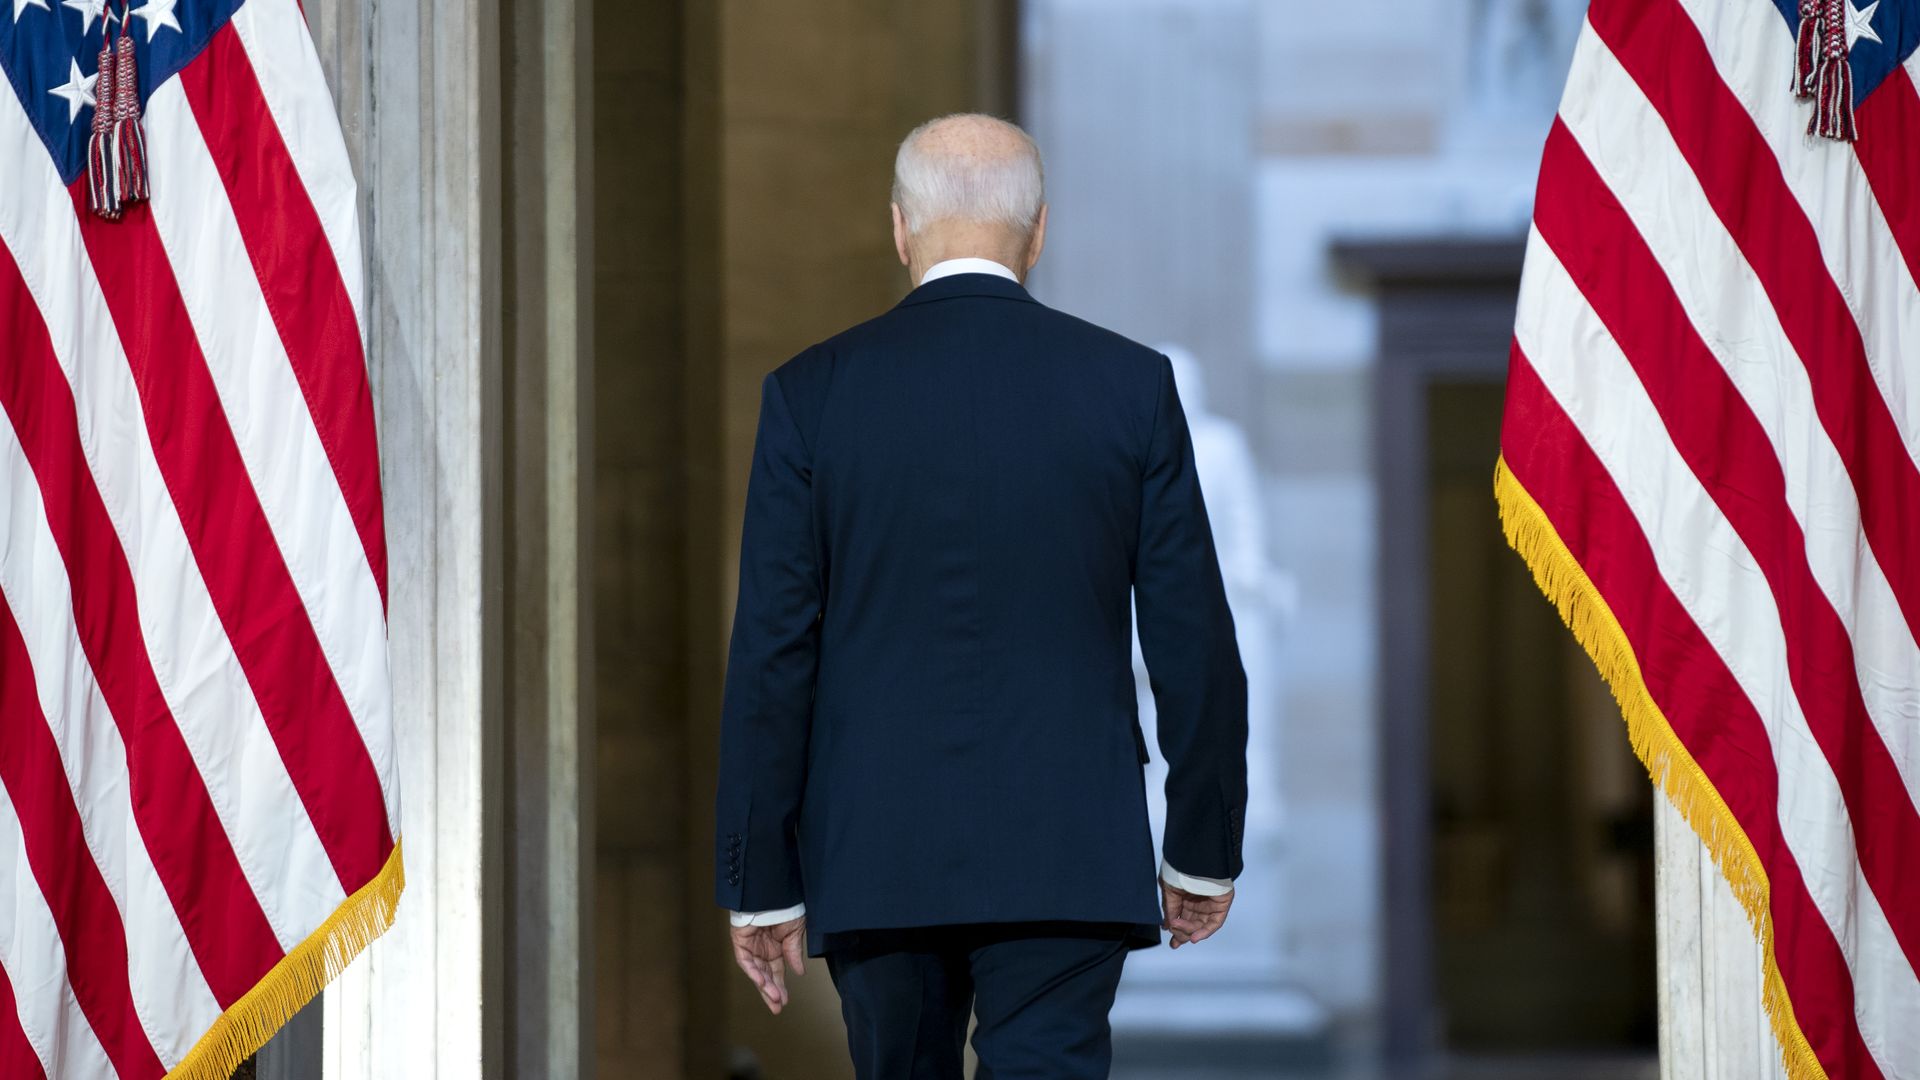 Biden's back turned